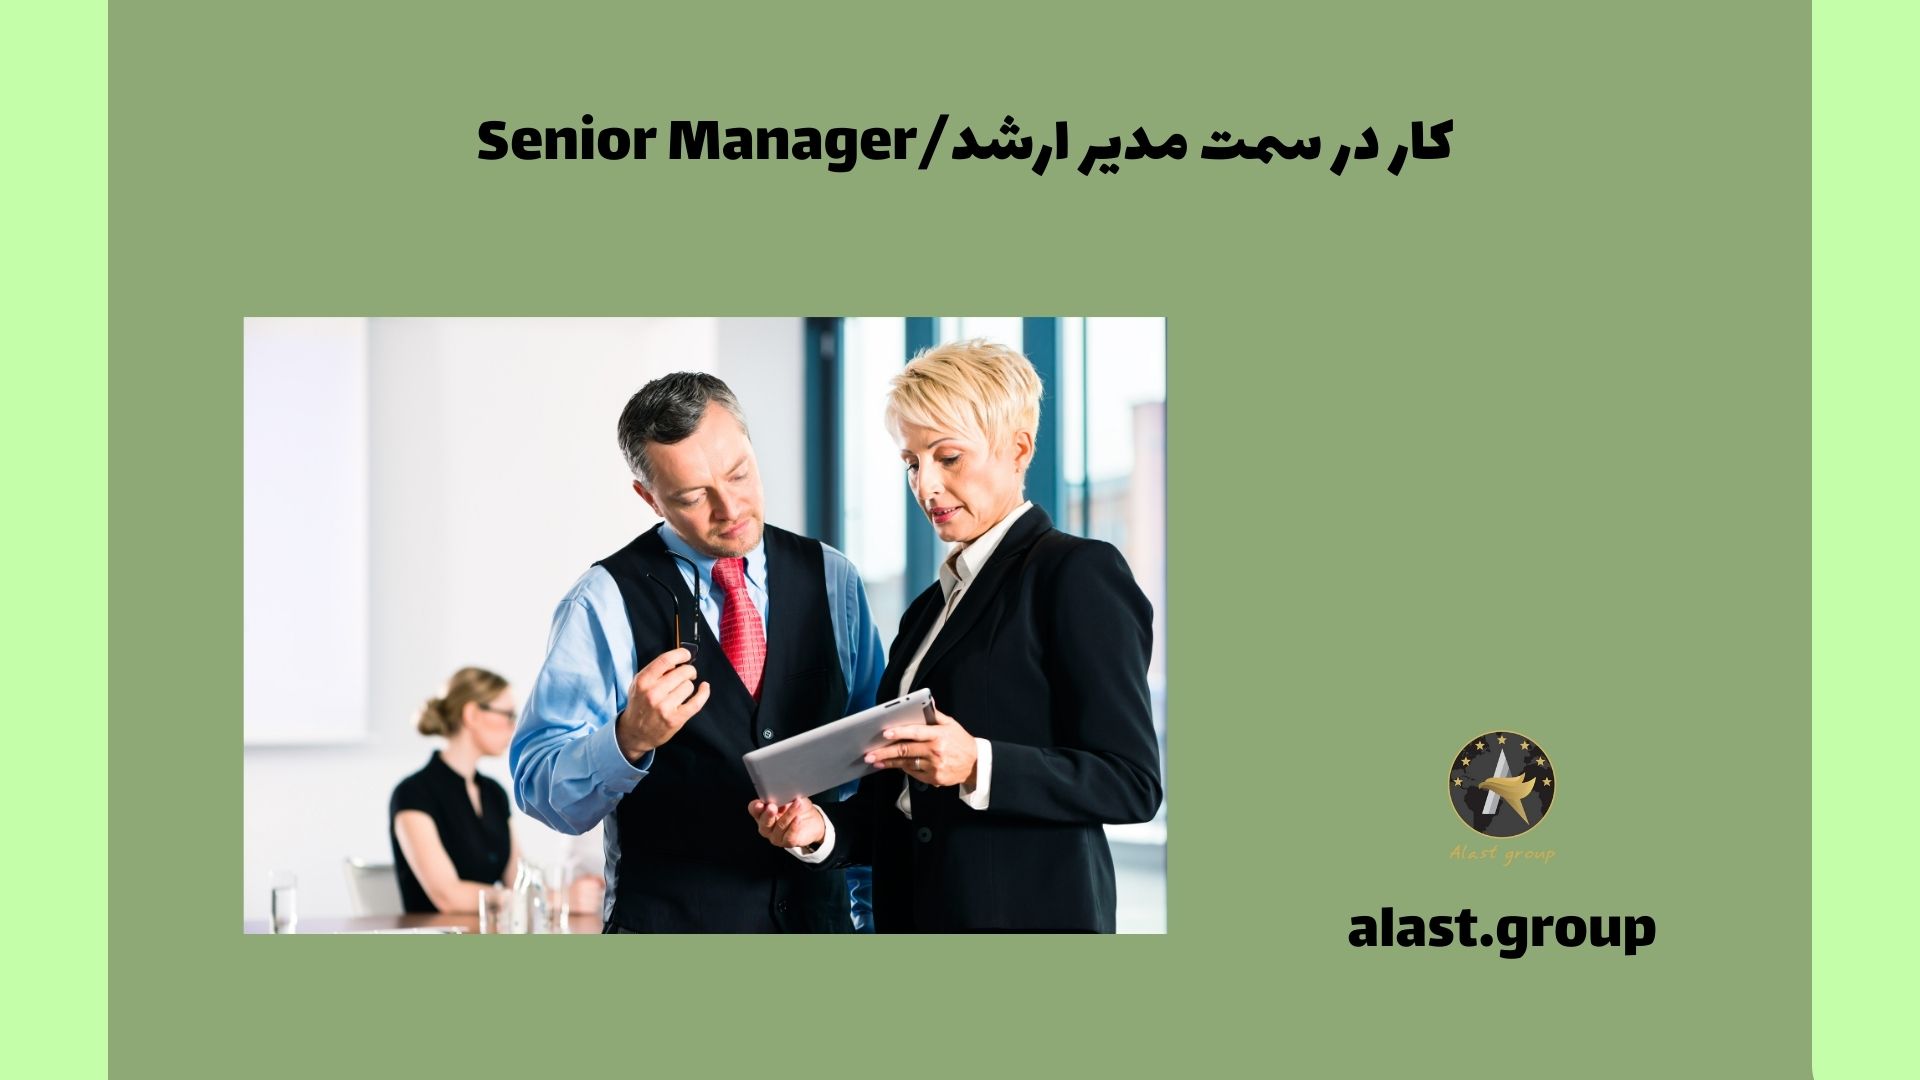 کار در سمت مدیر ارشد/Senior Manager